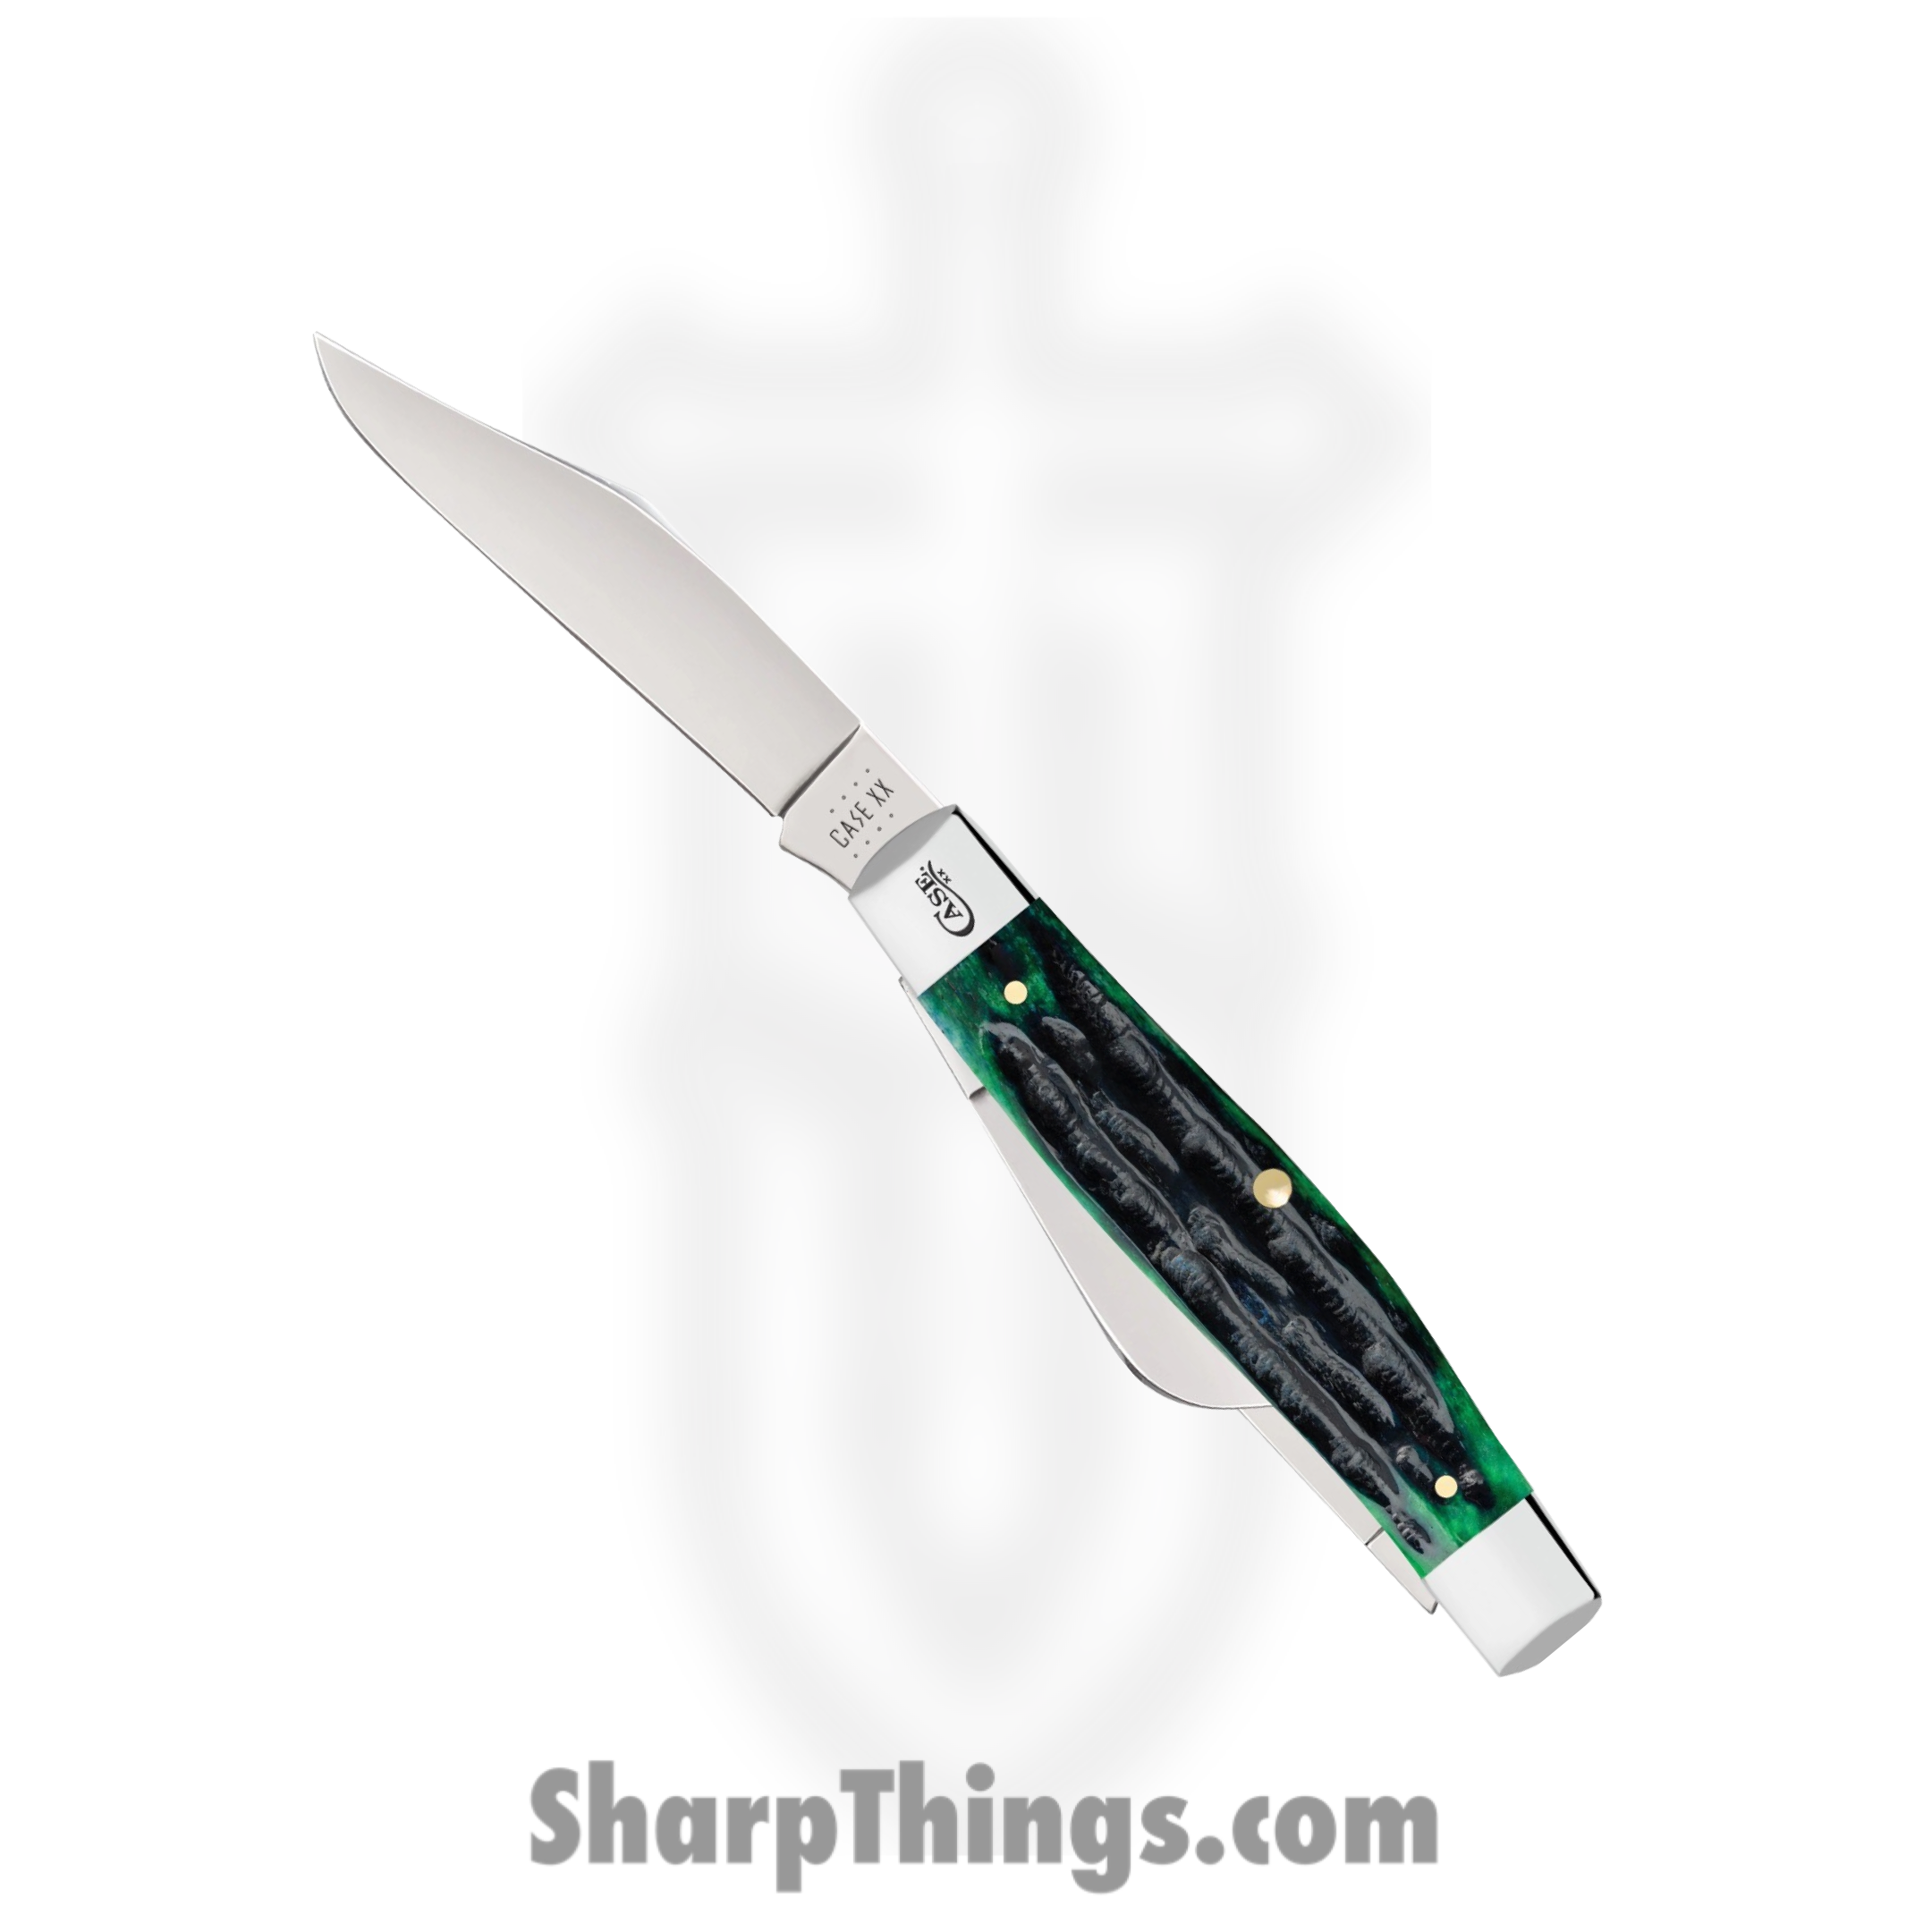 Case Knives - CA75833 - Large Stockman - Folding Knife - Tru-Sharp